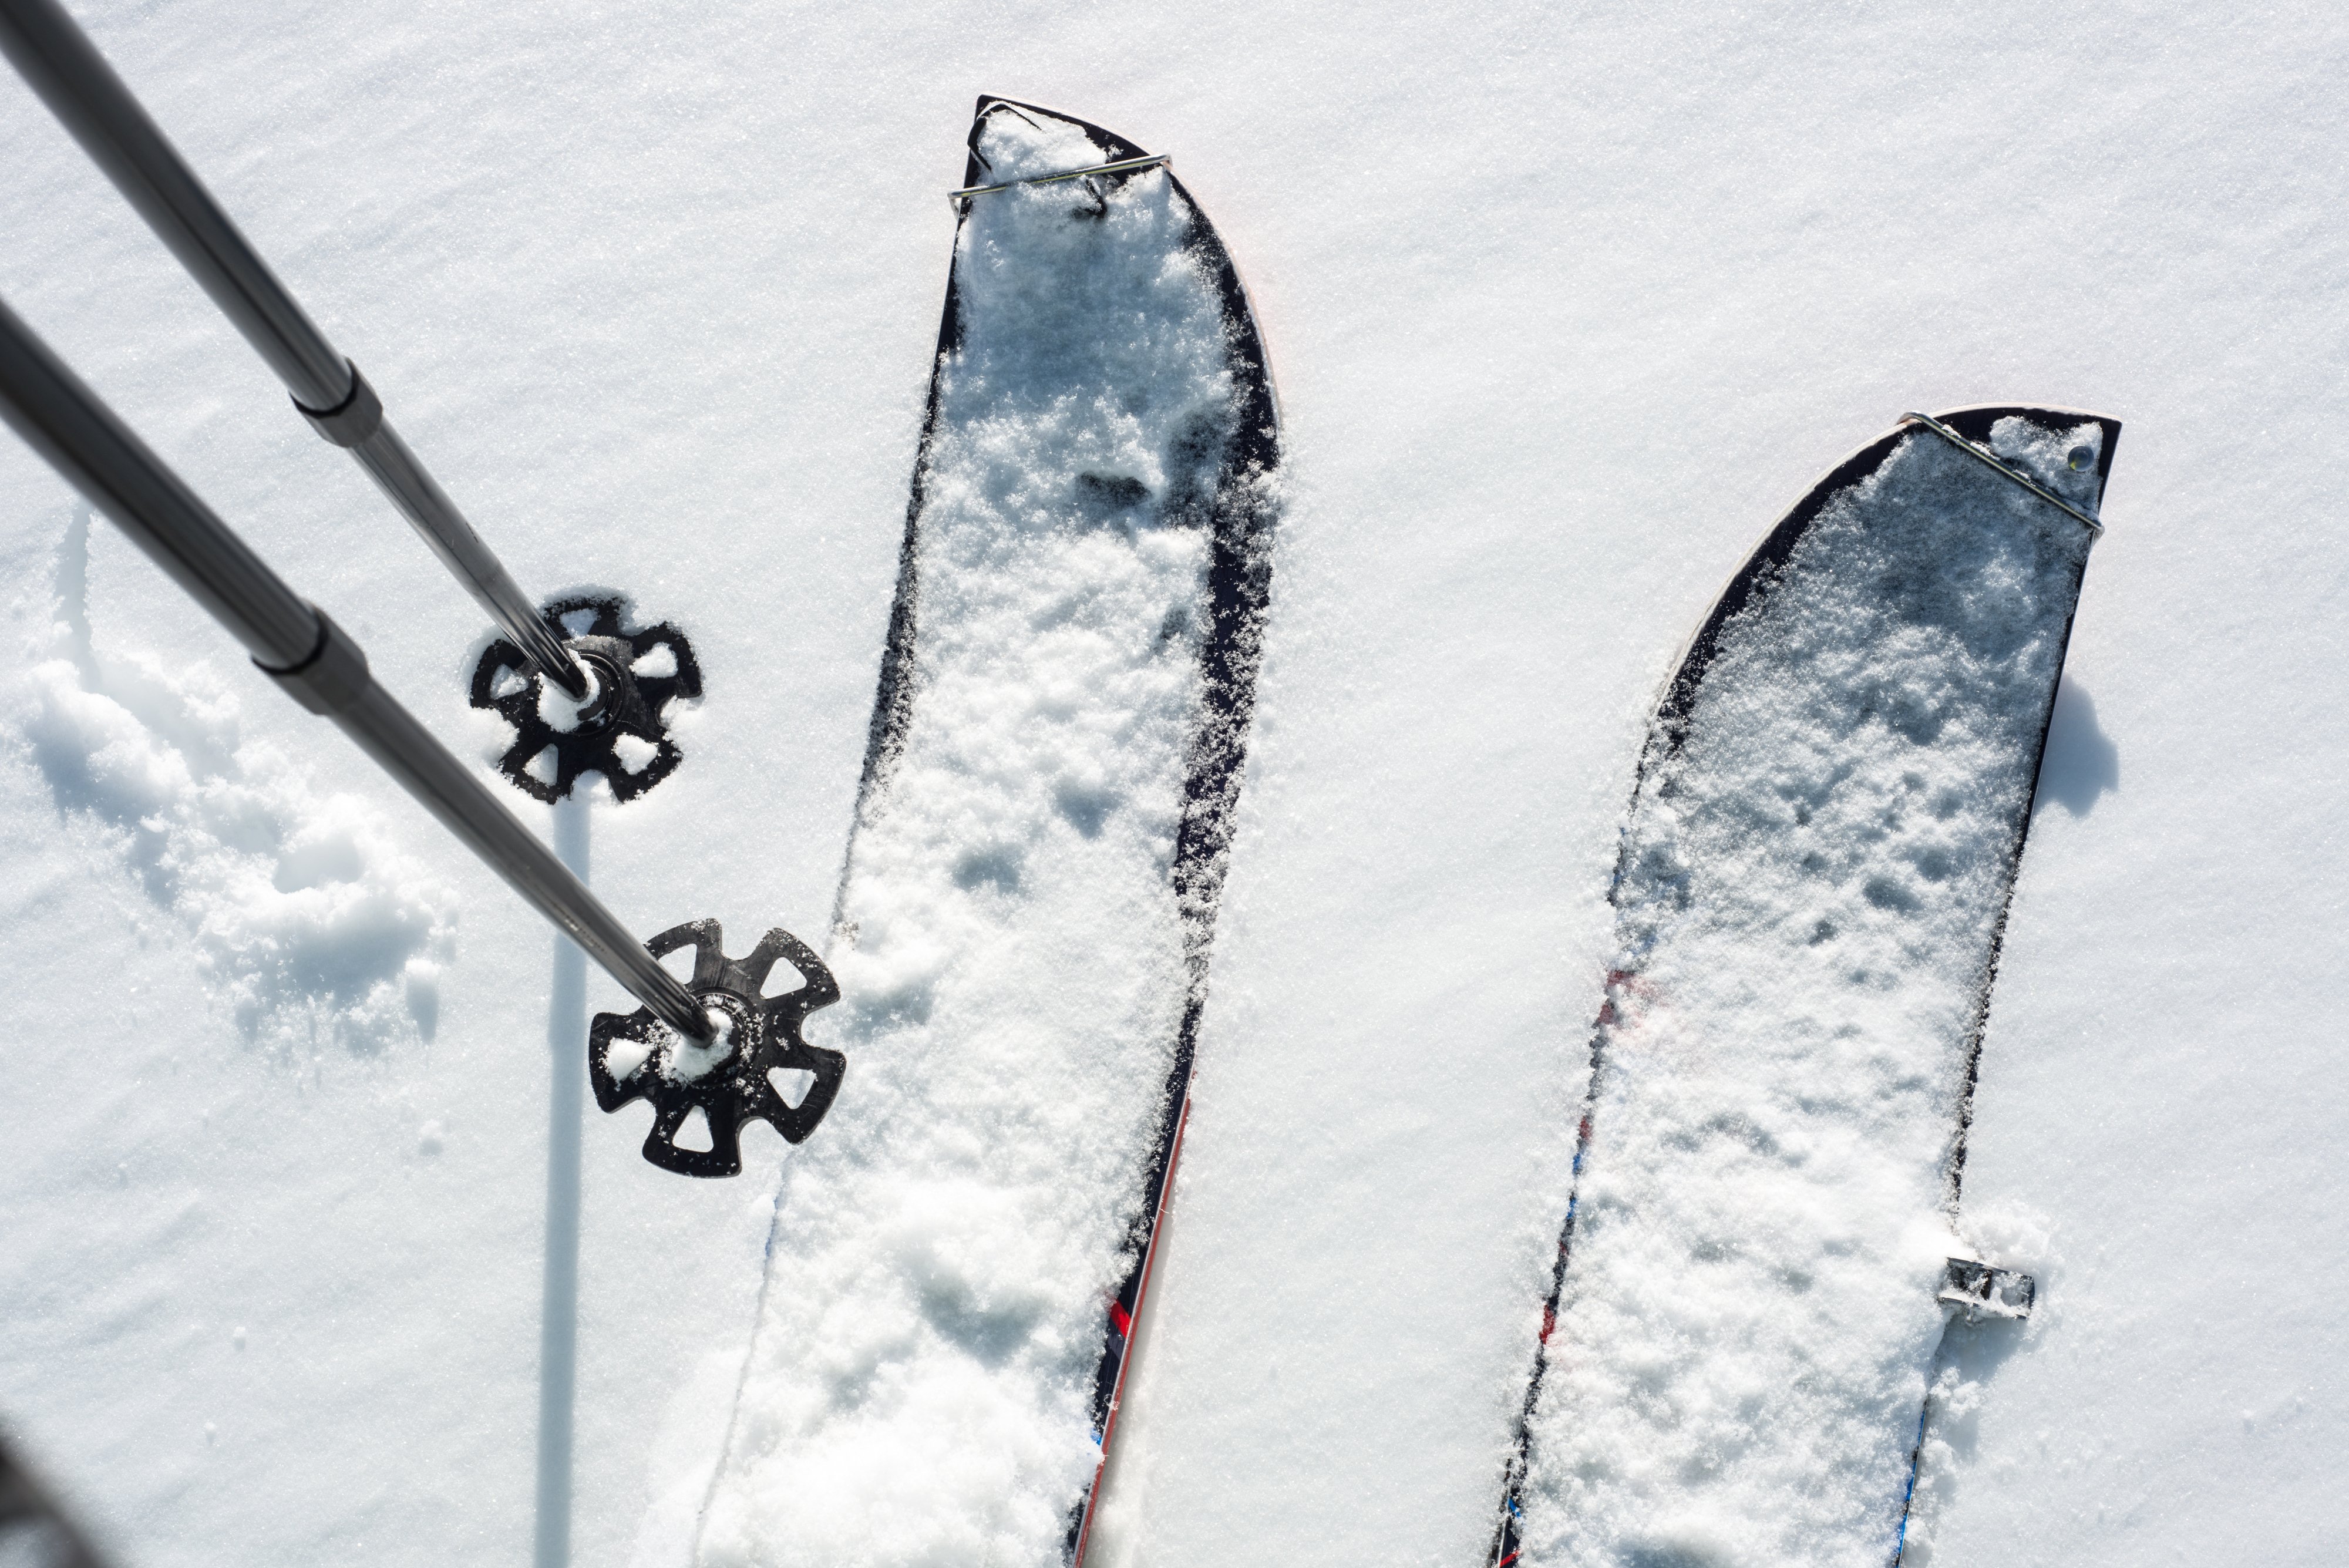 Cómo elegir los tipos de fijaciones de esquí